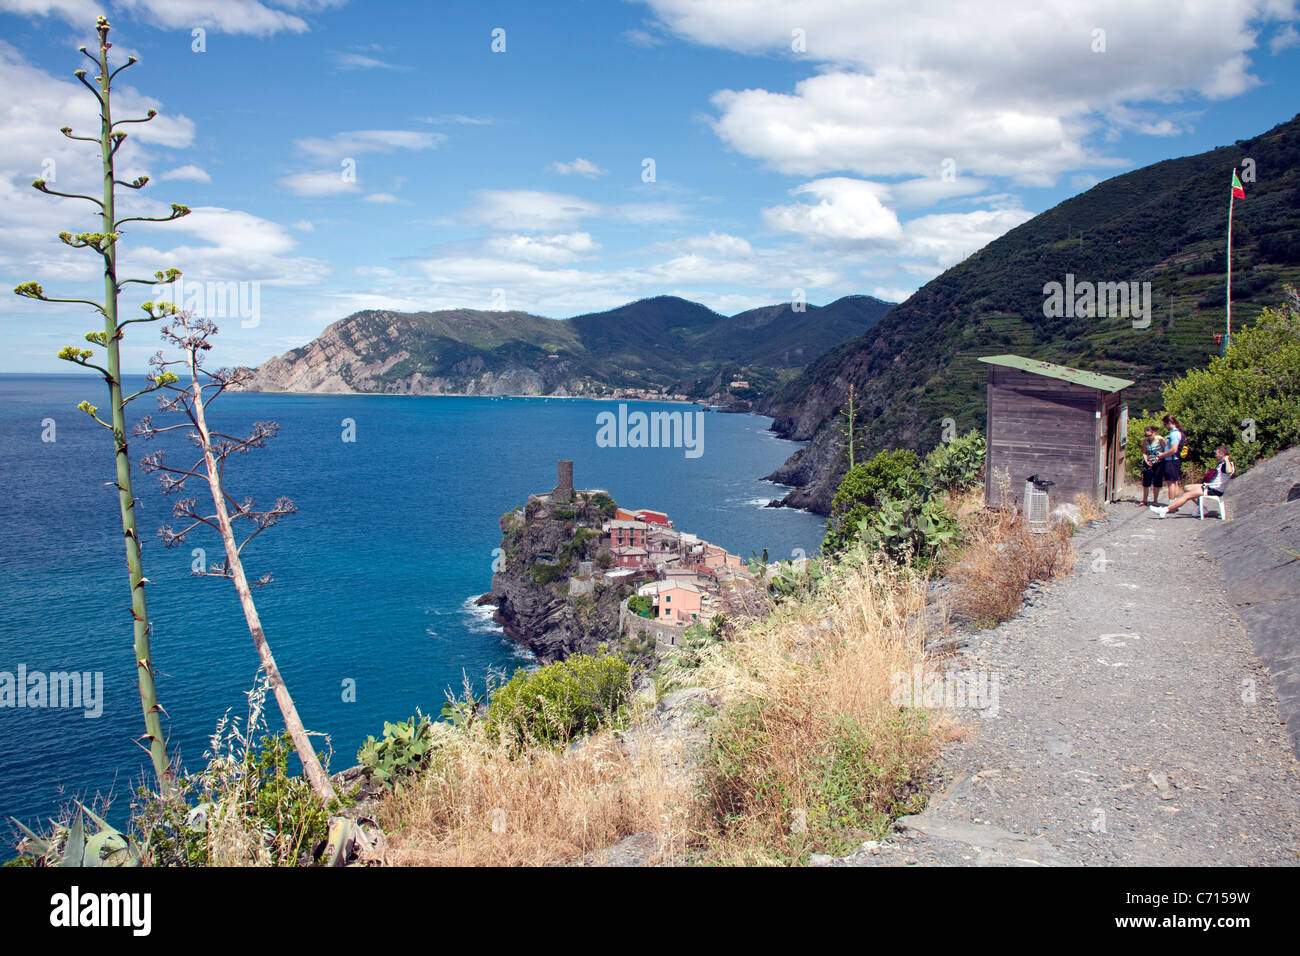 Escursionista a pagare chiosco, trail nel villaggio di pescatori Vernazza, Parco Nazionale Cinque Terre, sito Patrimonio Mondiale dell'Unesco, la Liguria di Levante, Italia, Europa Foto Stock